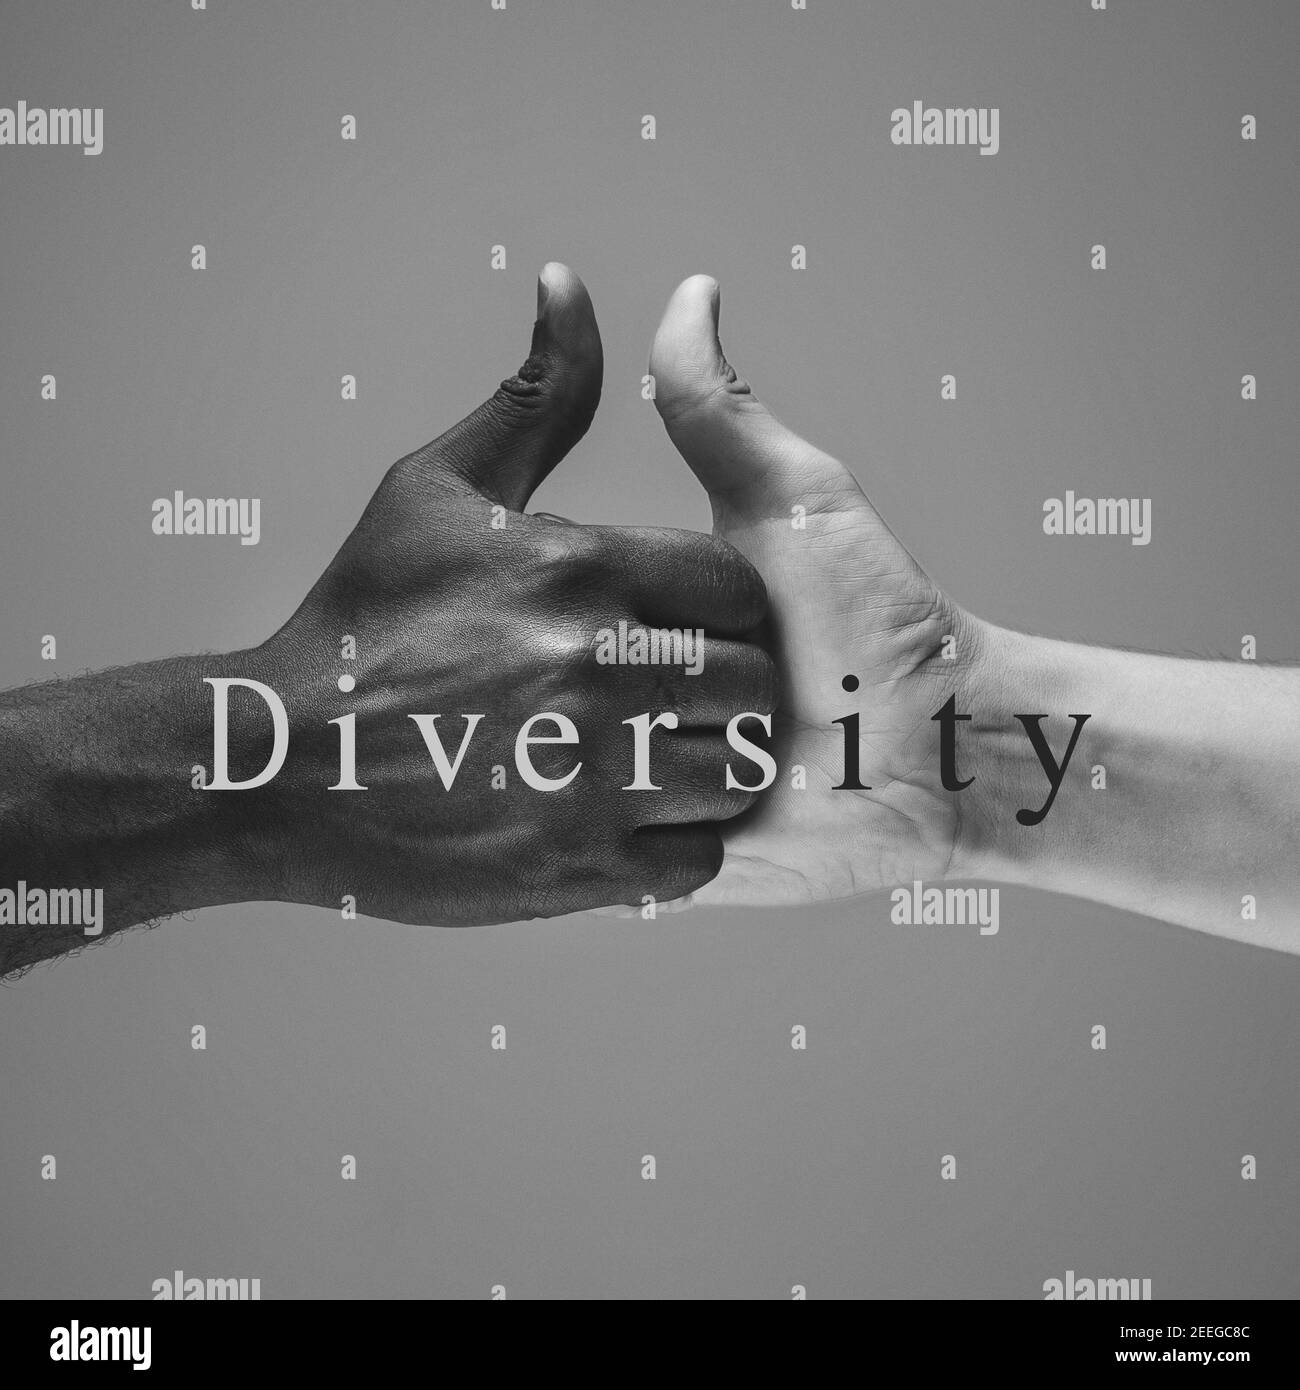 Vielfalt. Afrikanische und kaukasische Hände gestikulieren auf grauem Studiohintergrund. Toleranz und Gleichheit, Einheit, Unterstützung, freundlicherweise Koexistenz zusammen Konzept. Weltweite multirassische Gemeinschaft. Stockfoto